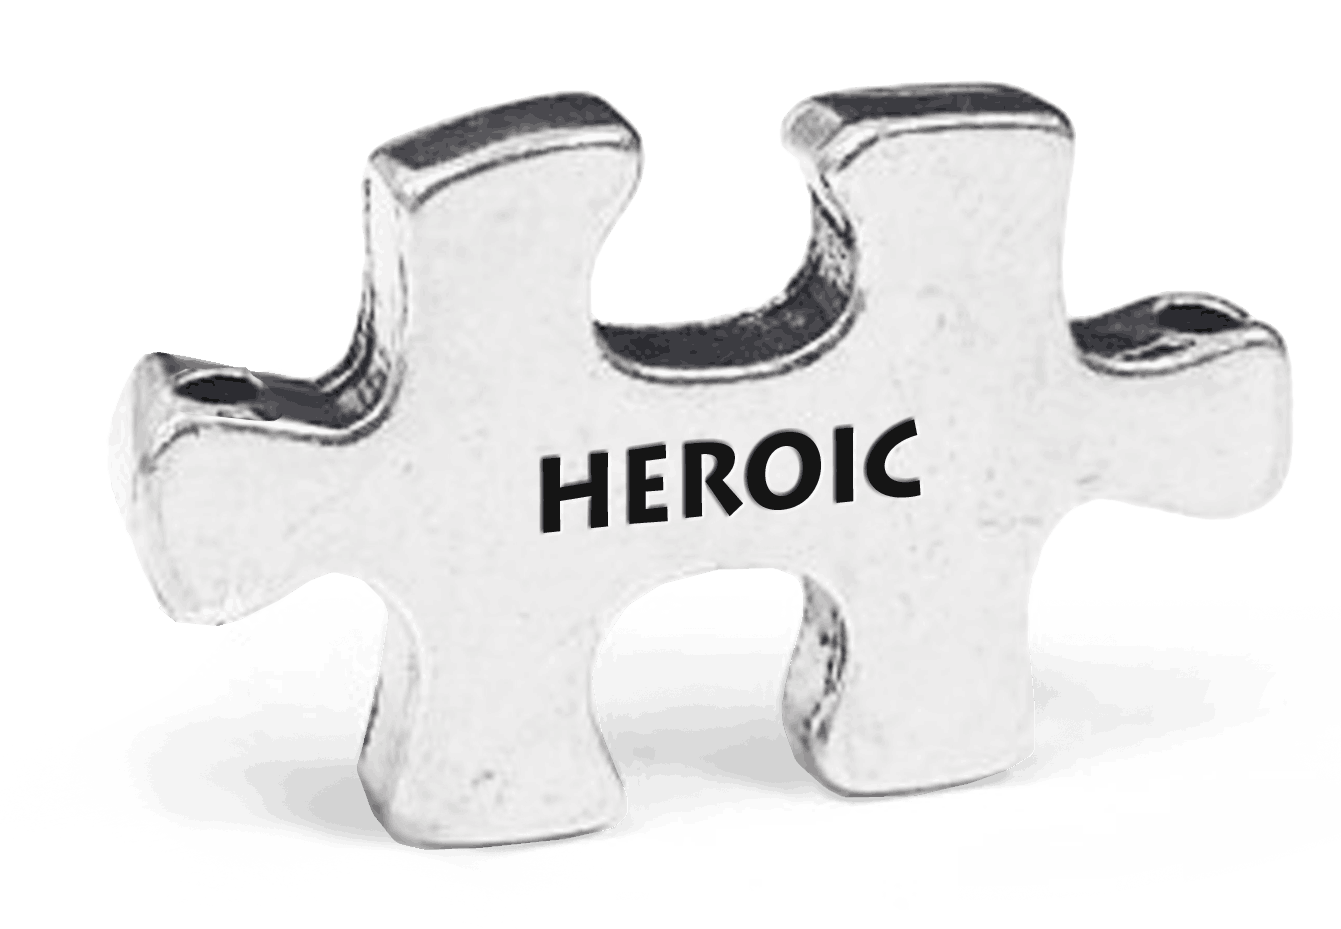 Heroic Puzzle Token on Key Loop